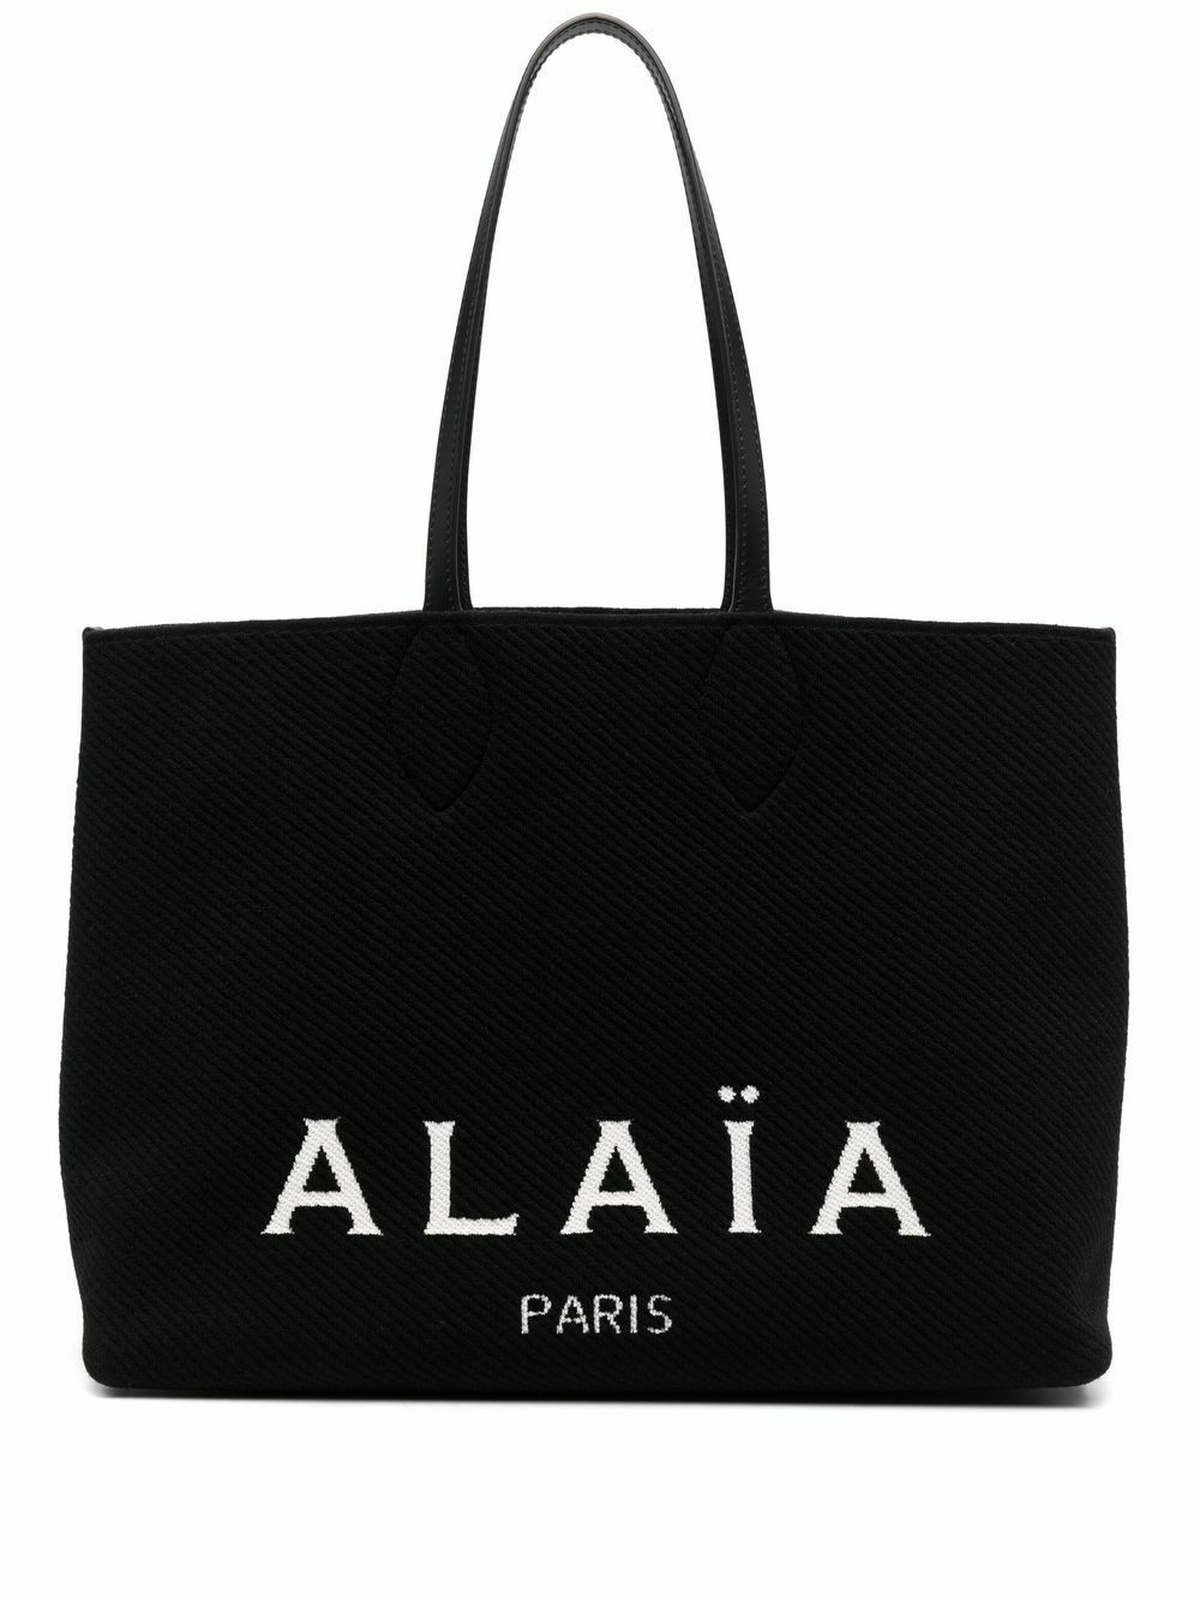 ALAÏA - Logo Large Shopping Bag ALAÏA